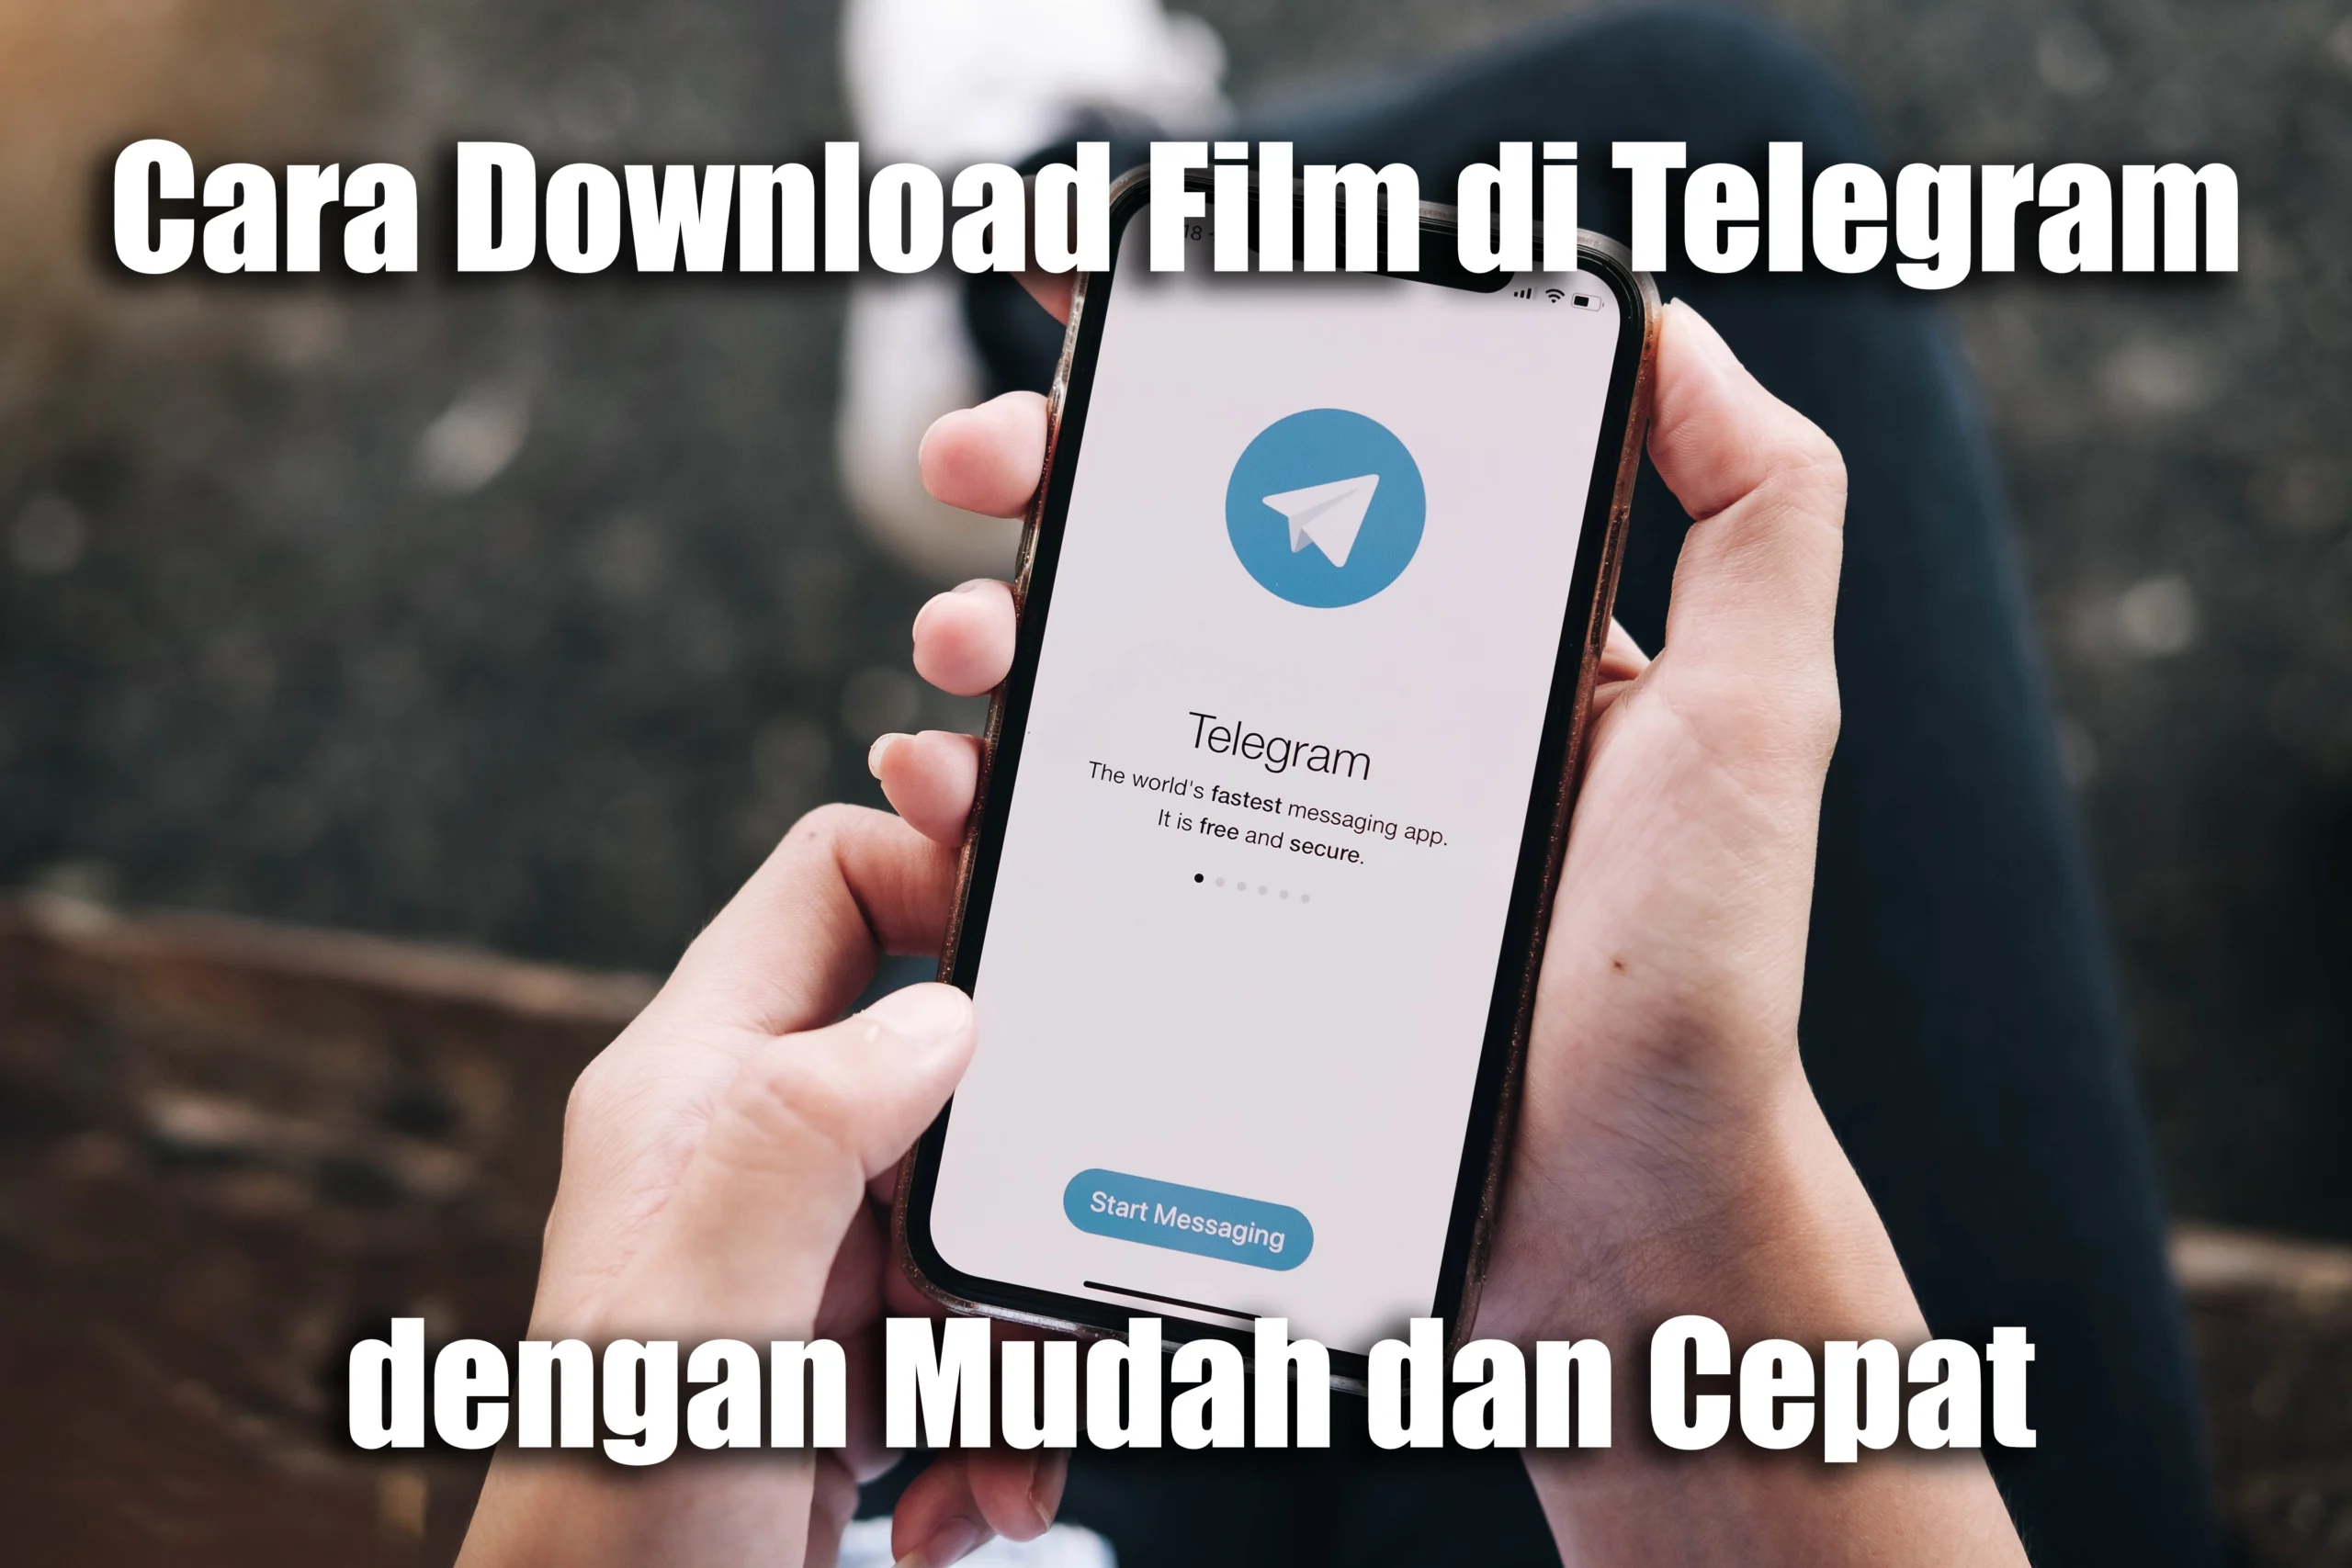 Cara Download Film di Telegram dengan Mudah dan Cepat